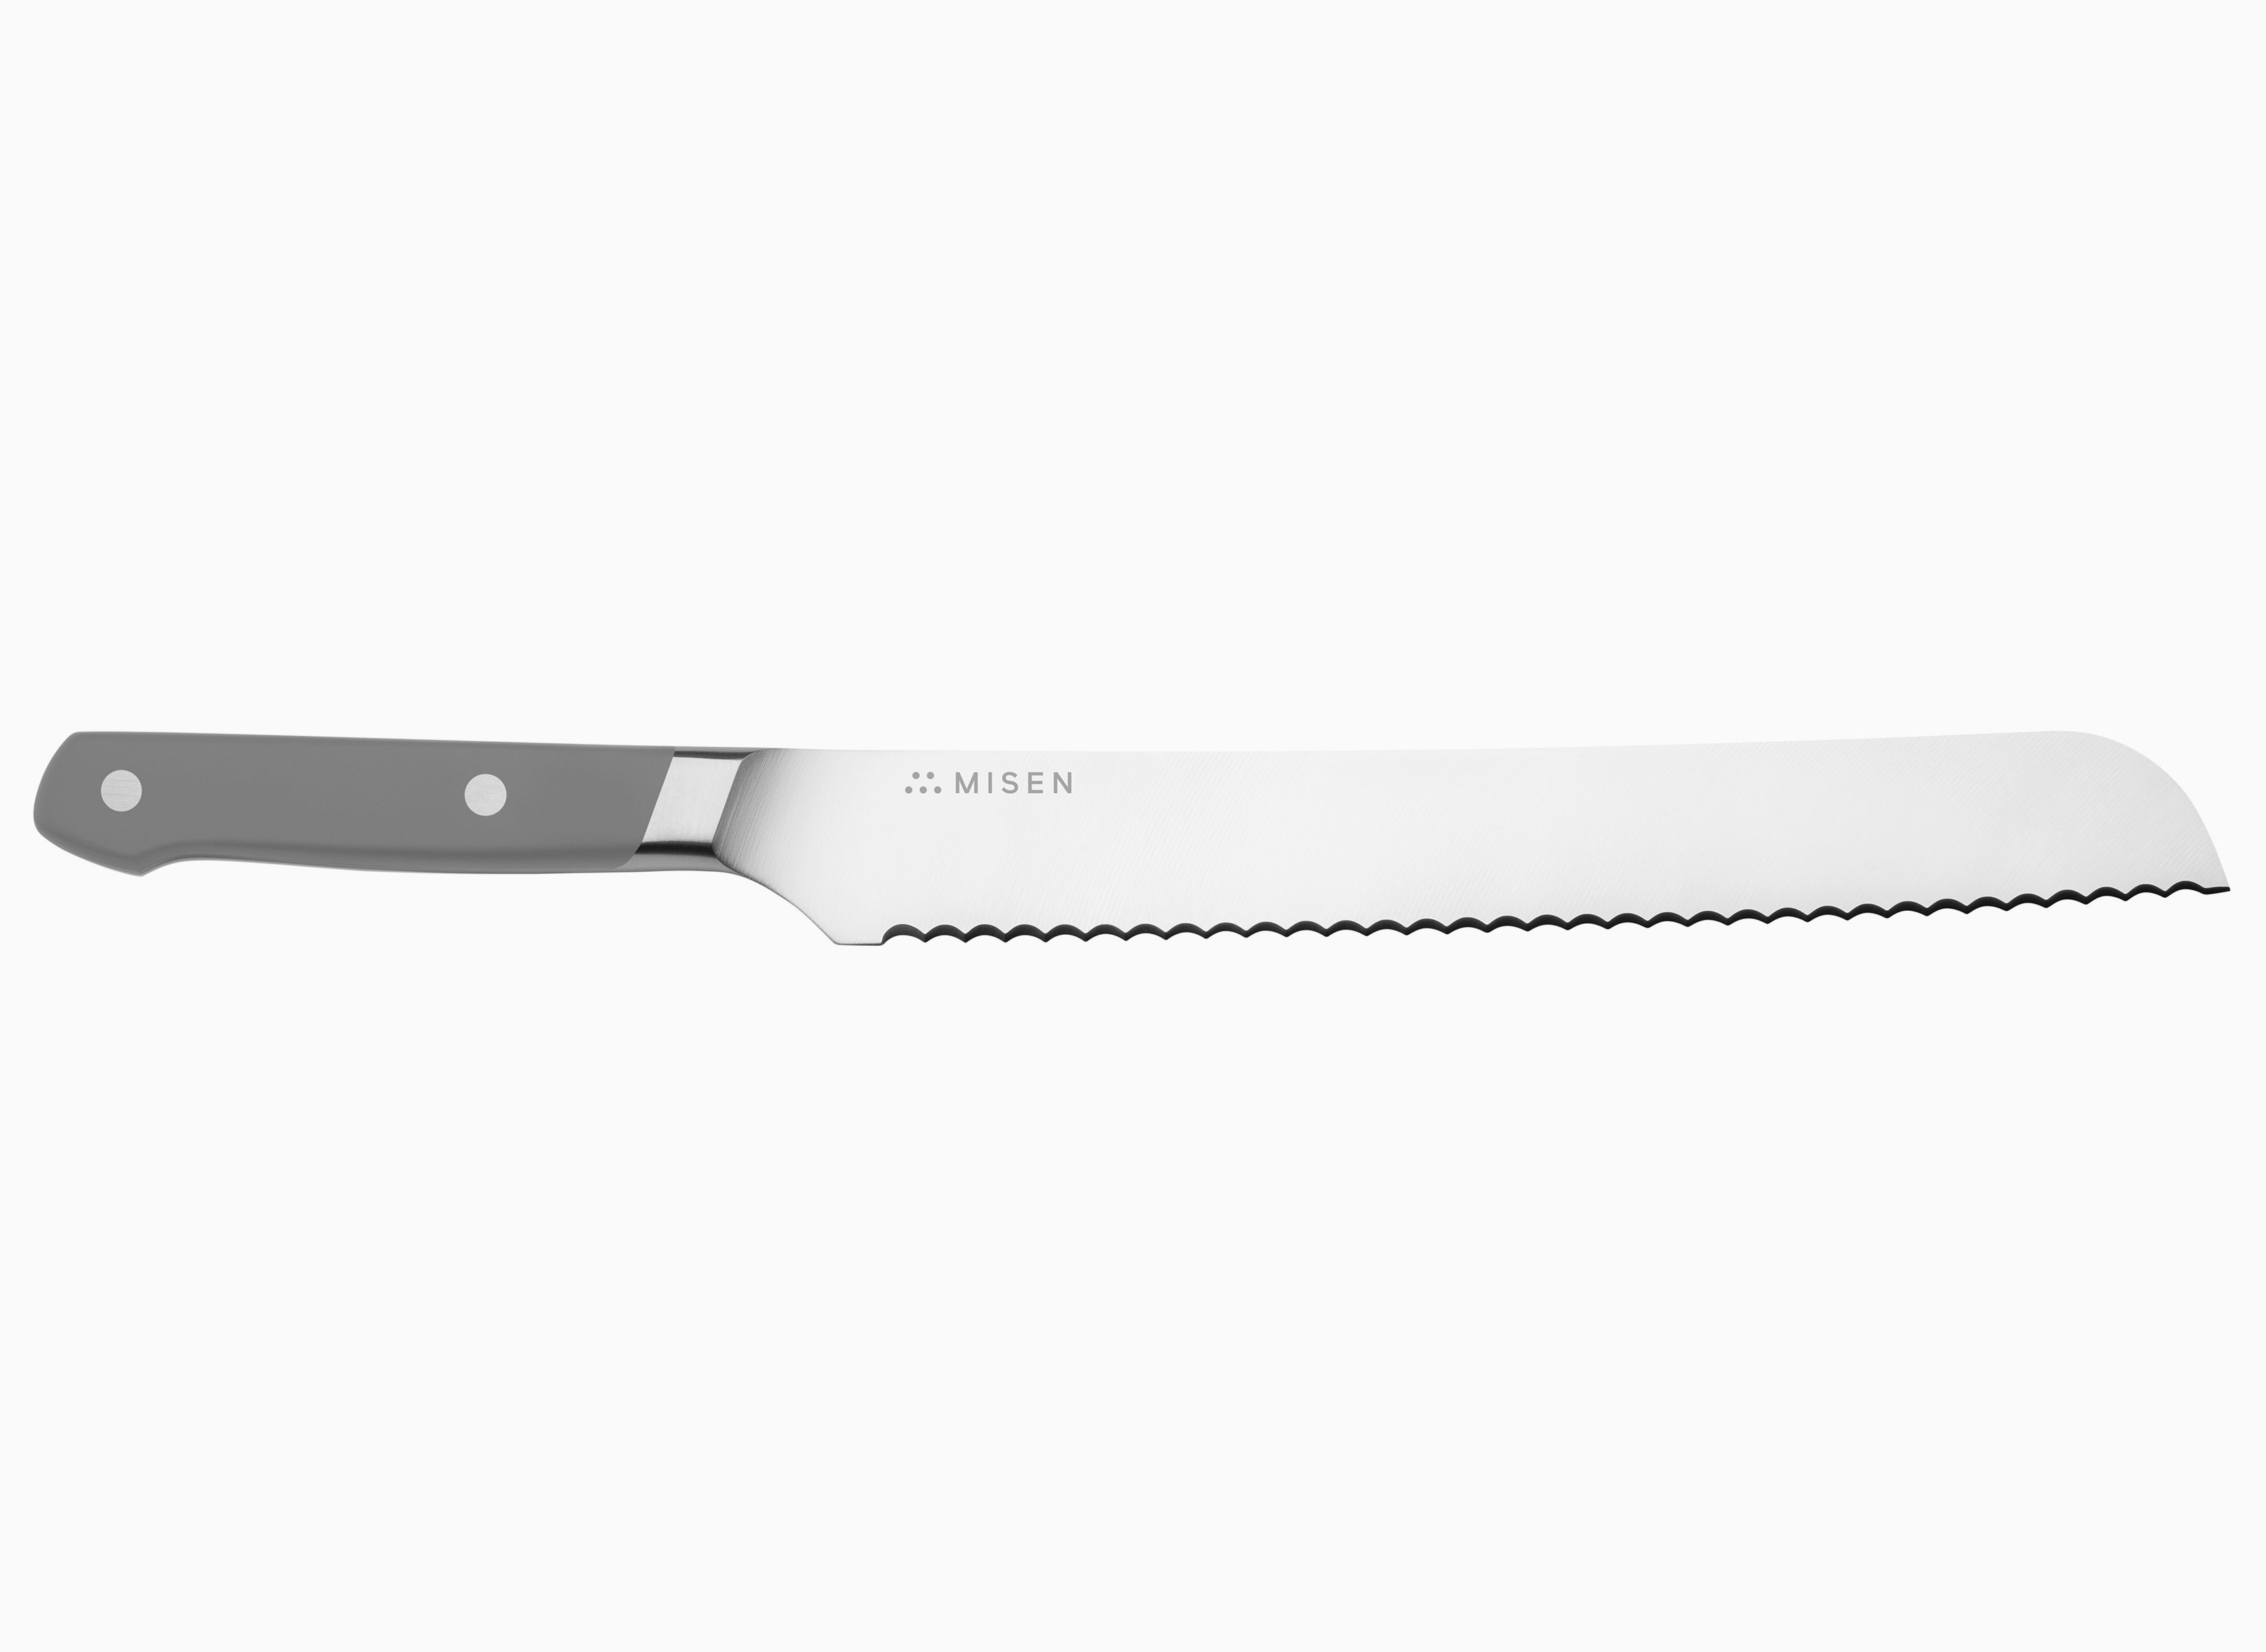 Misen MK-1033-2 Serrated Bread Knife, 9.5 Inch Bread Cutter, Blue 